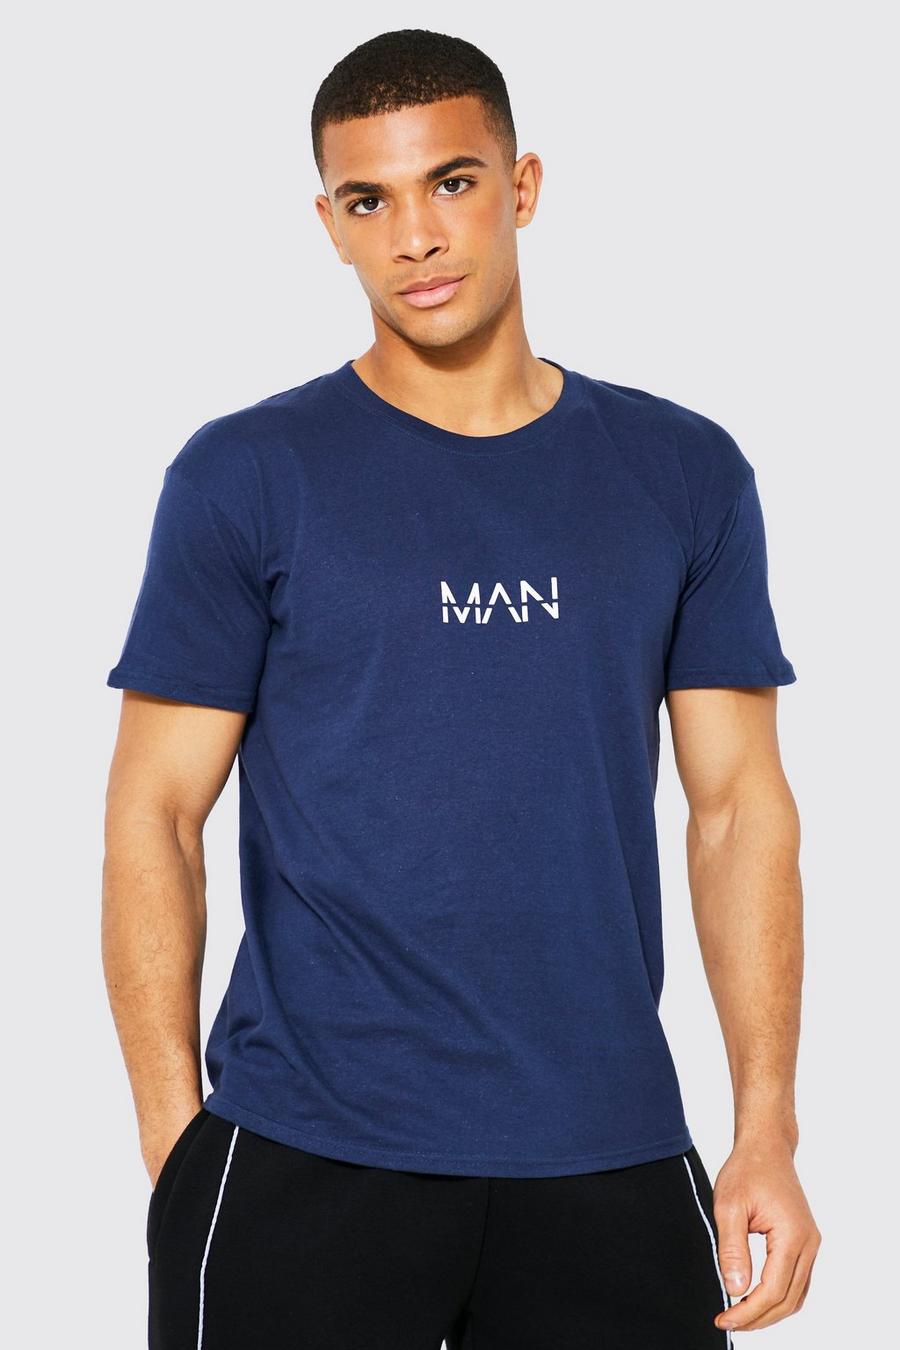 Navy marineblau Original Man Print T-shirt